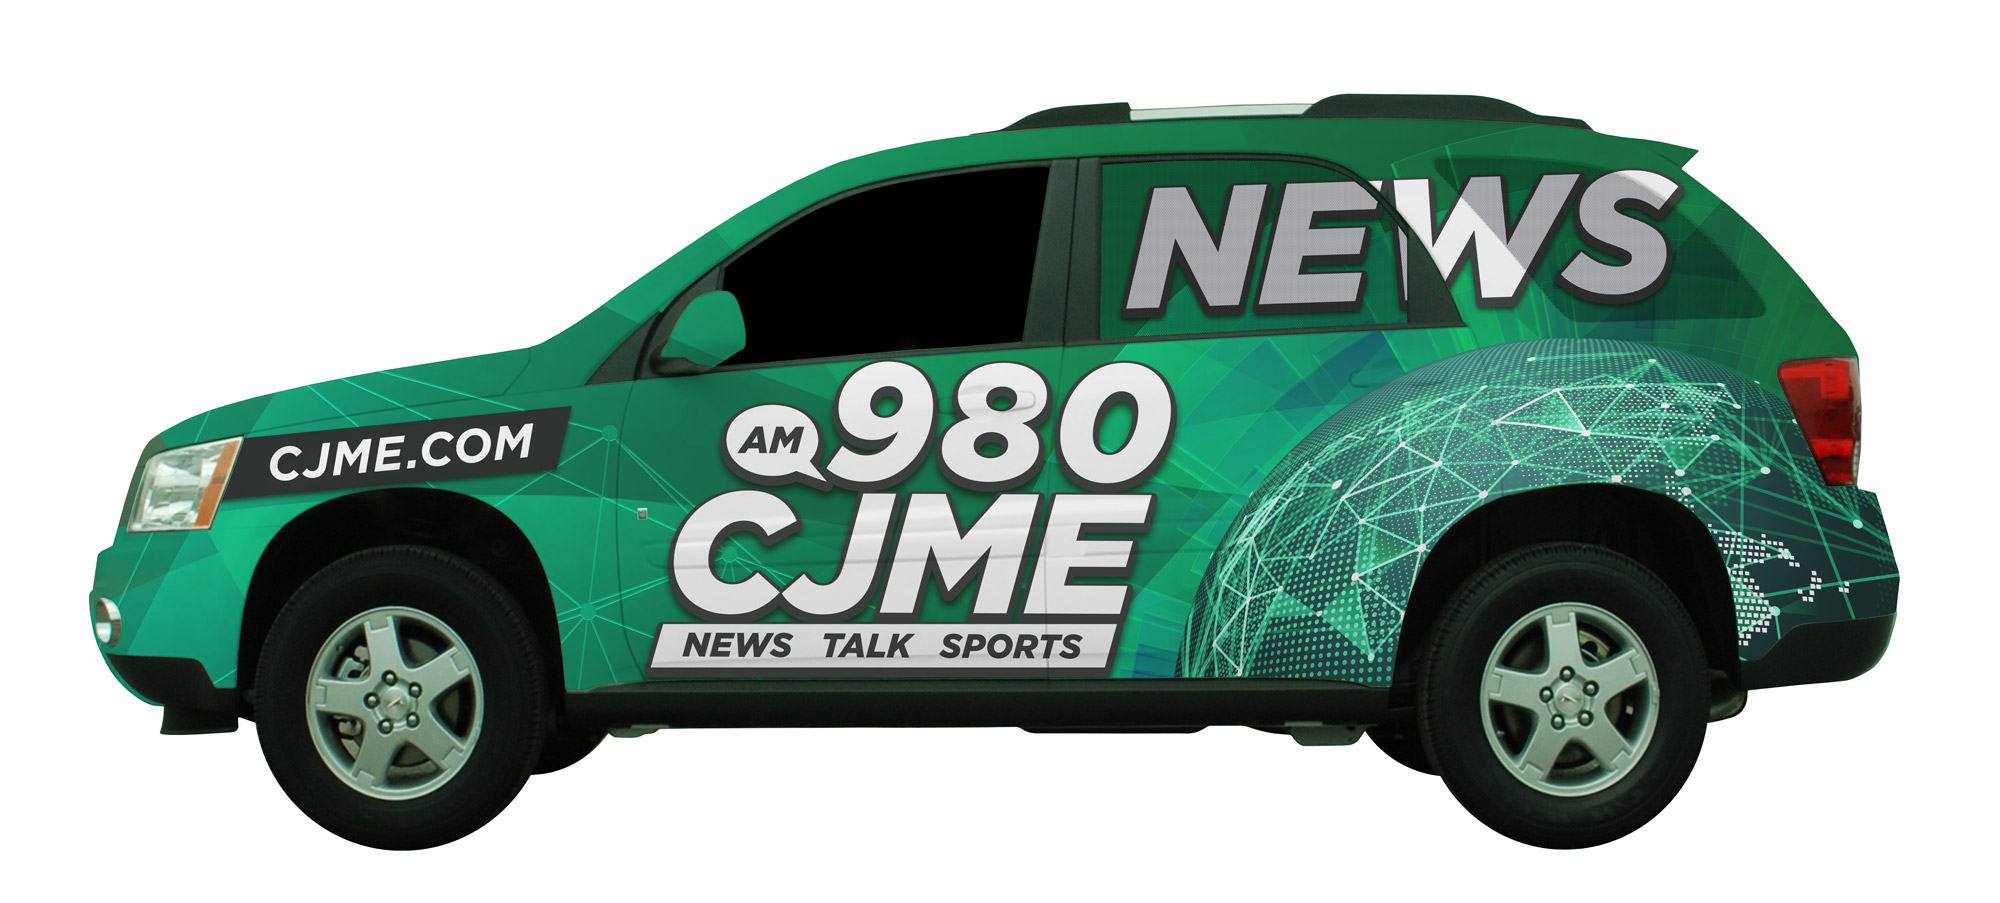 CJME News Vehicle